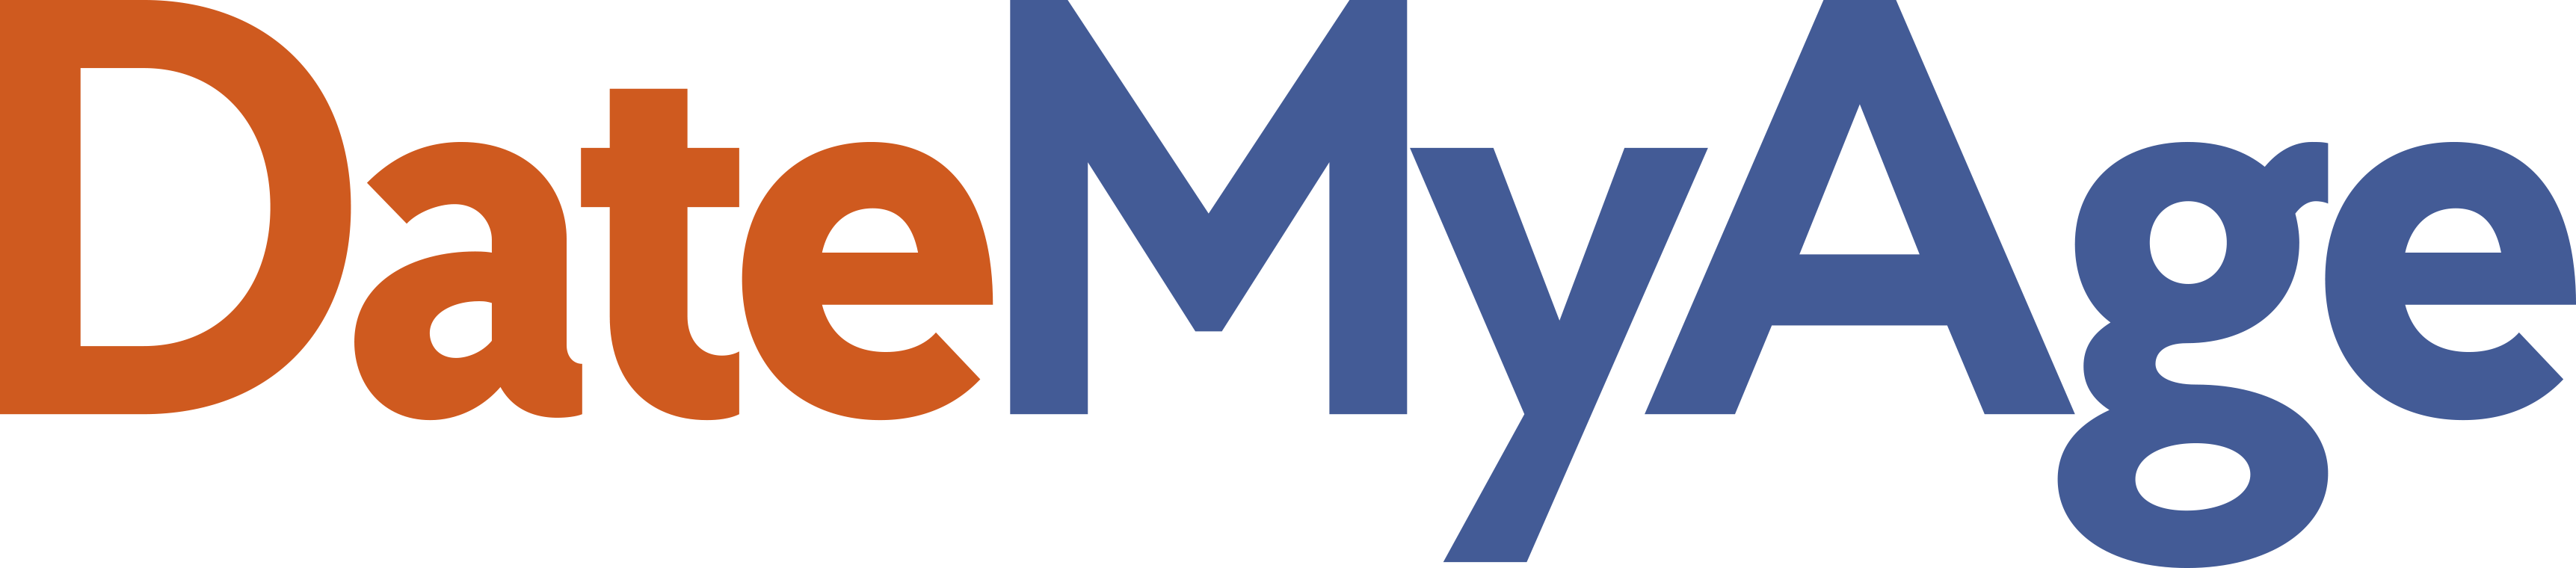 DateMyAge logo